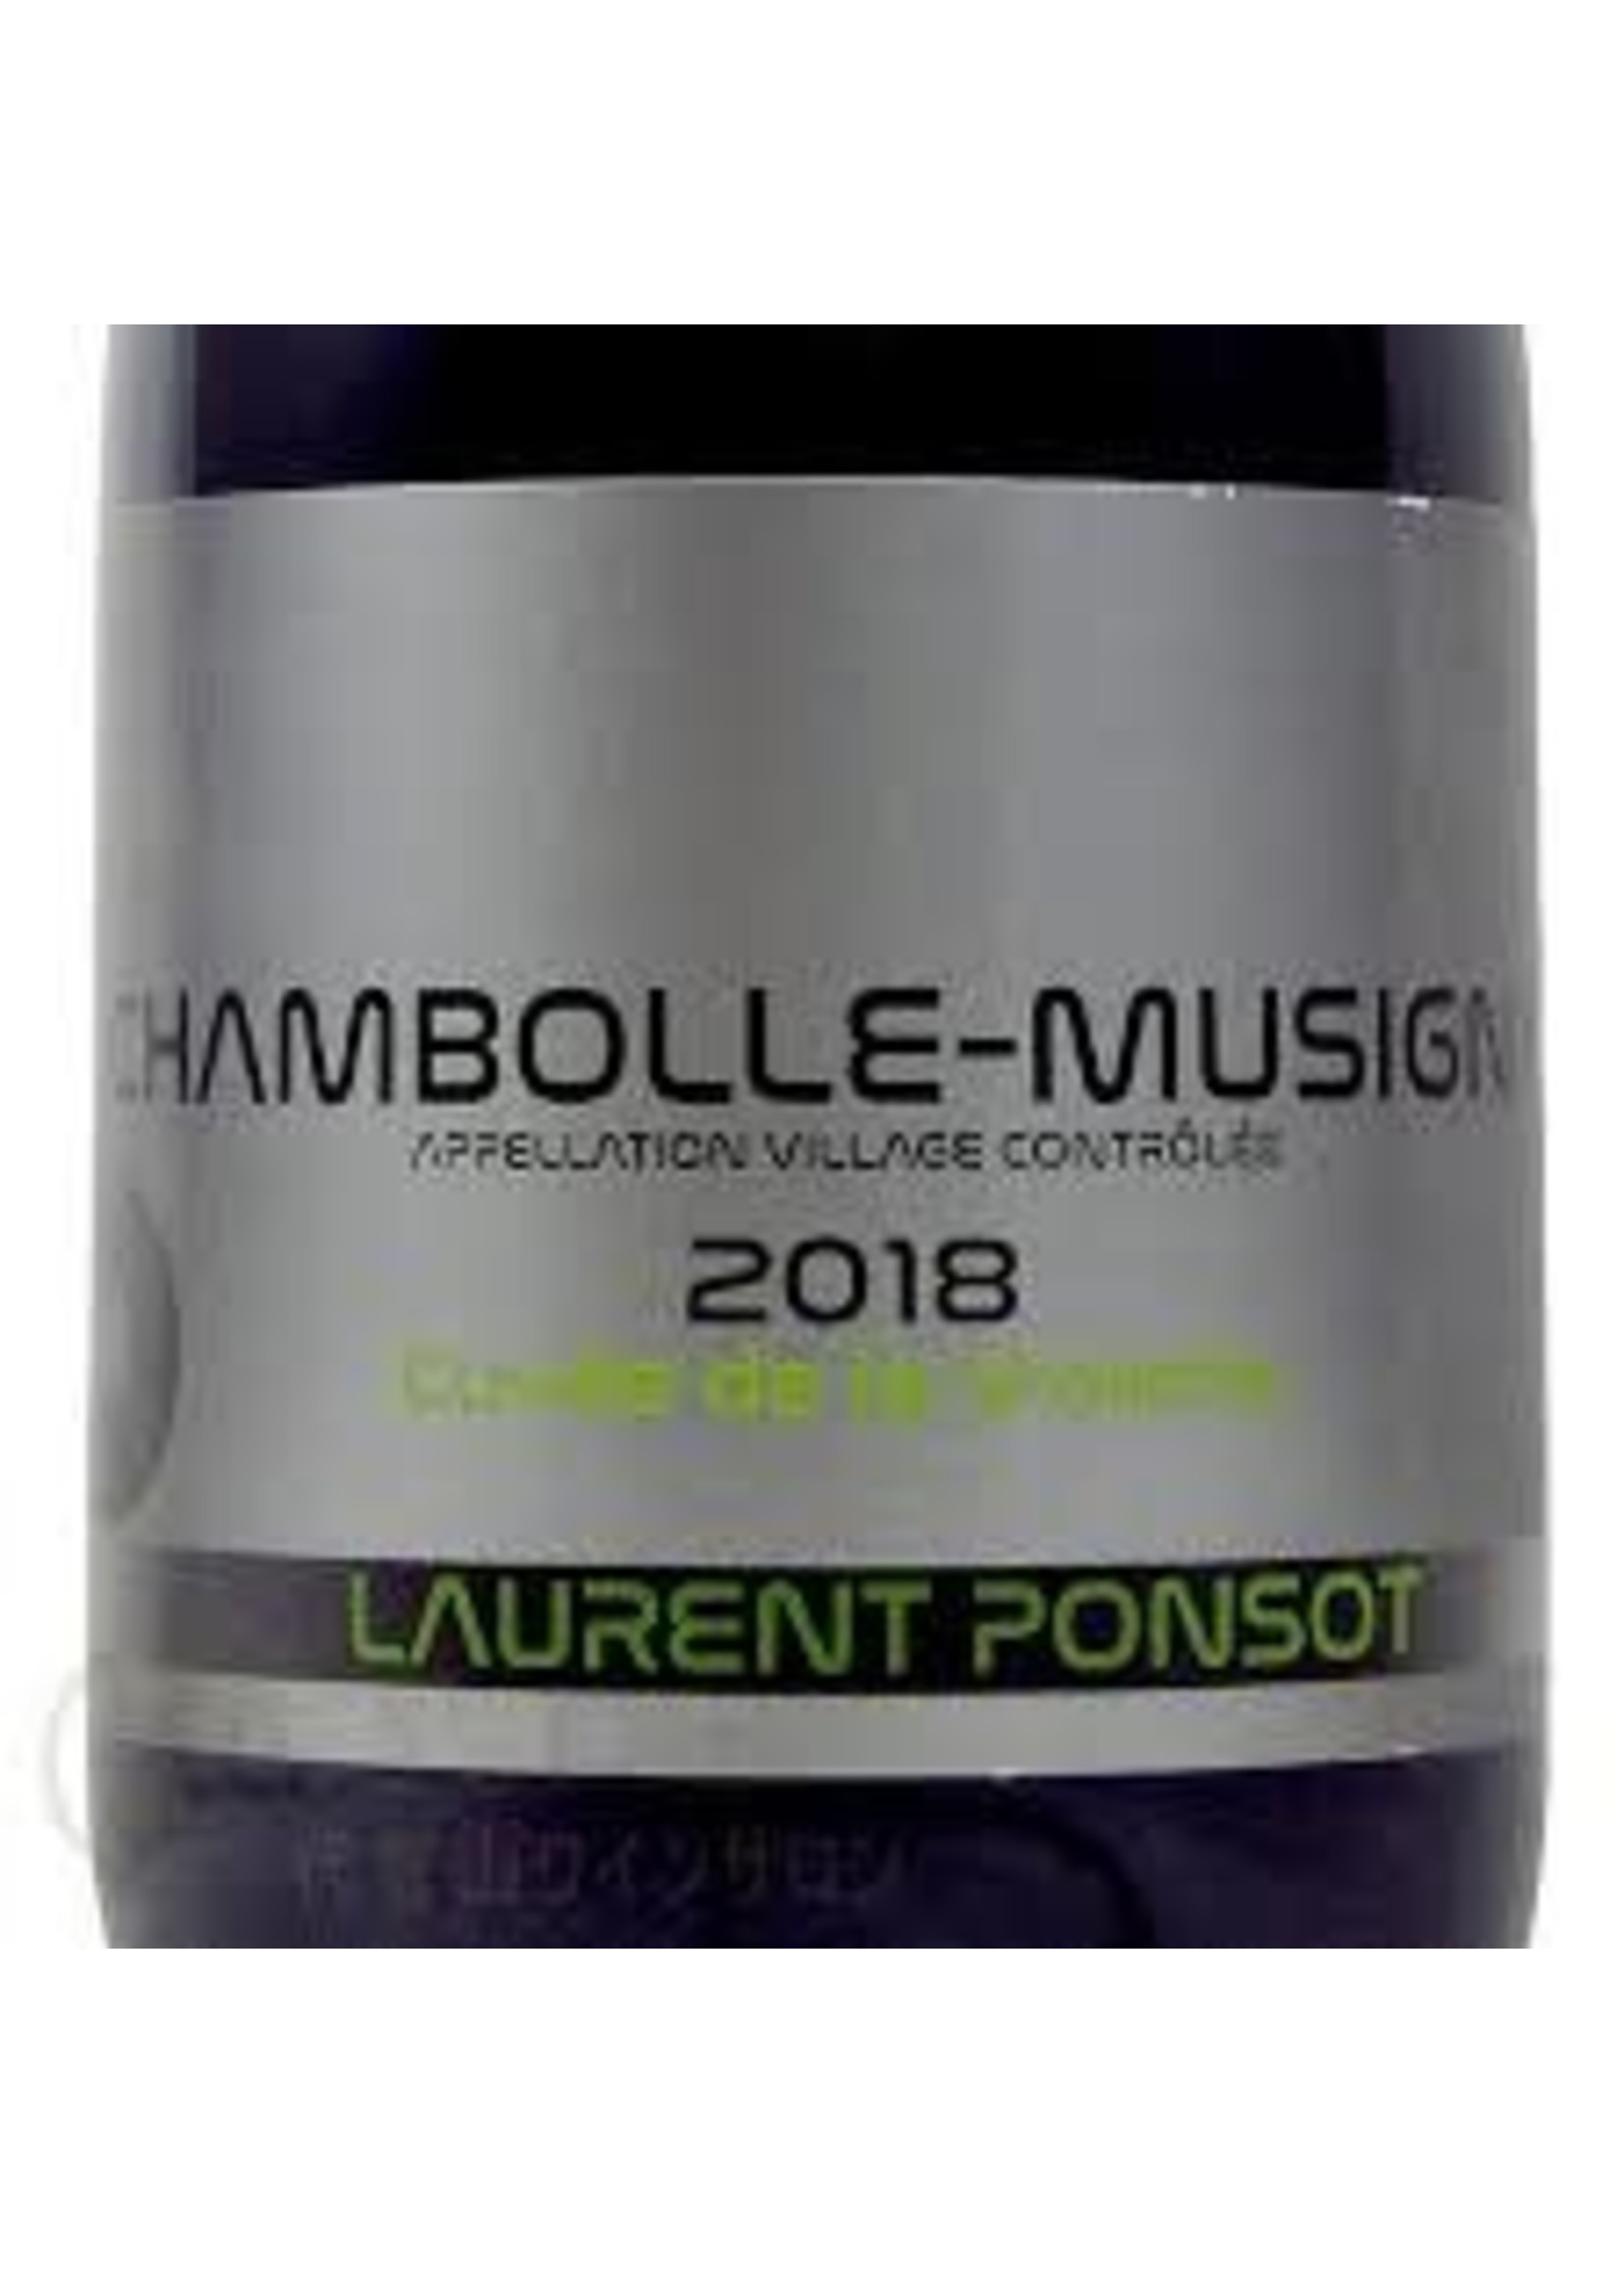 Laurent Ponsot 2018 Chambolle-Musigny 'Cuvee de La Violette' 750ml